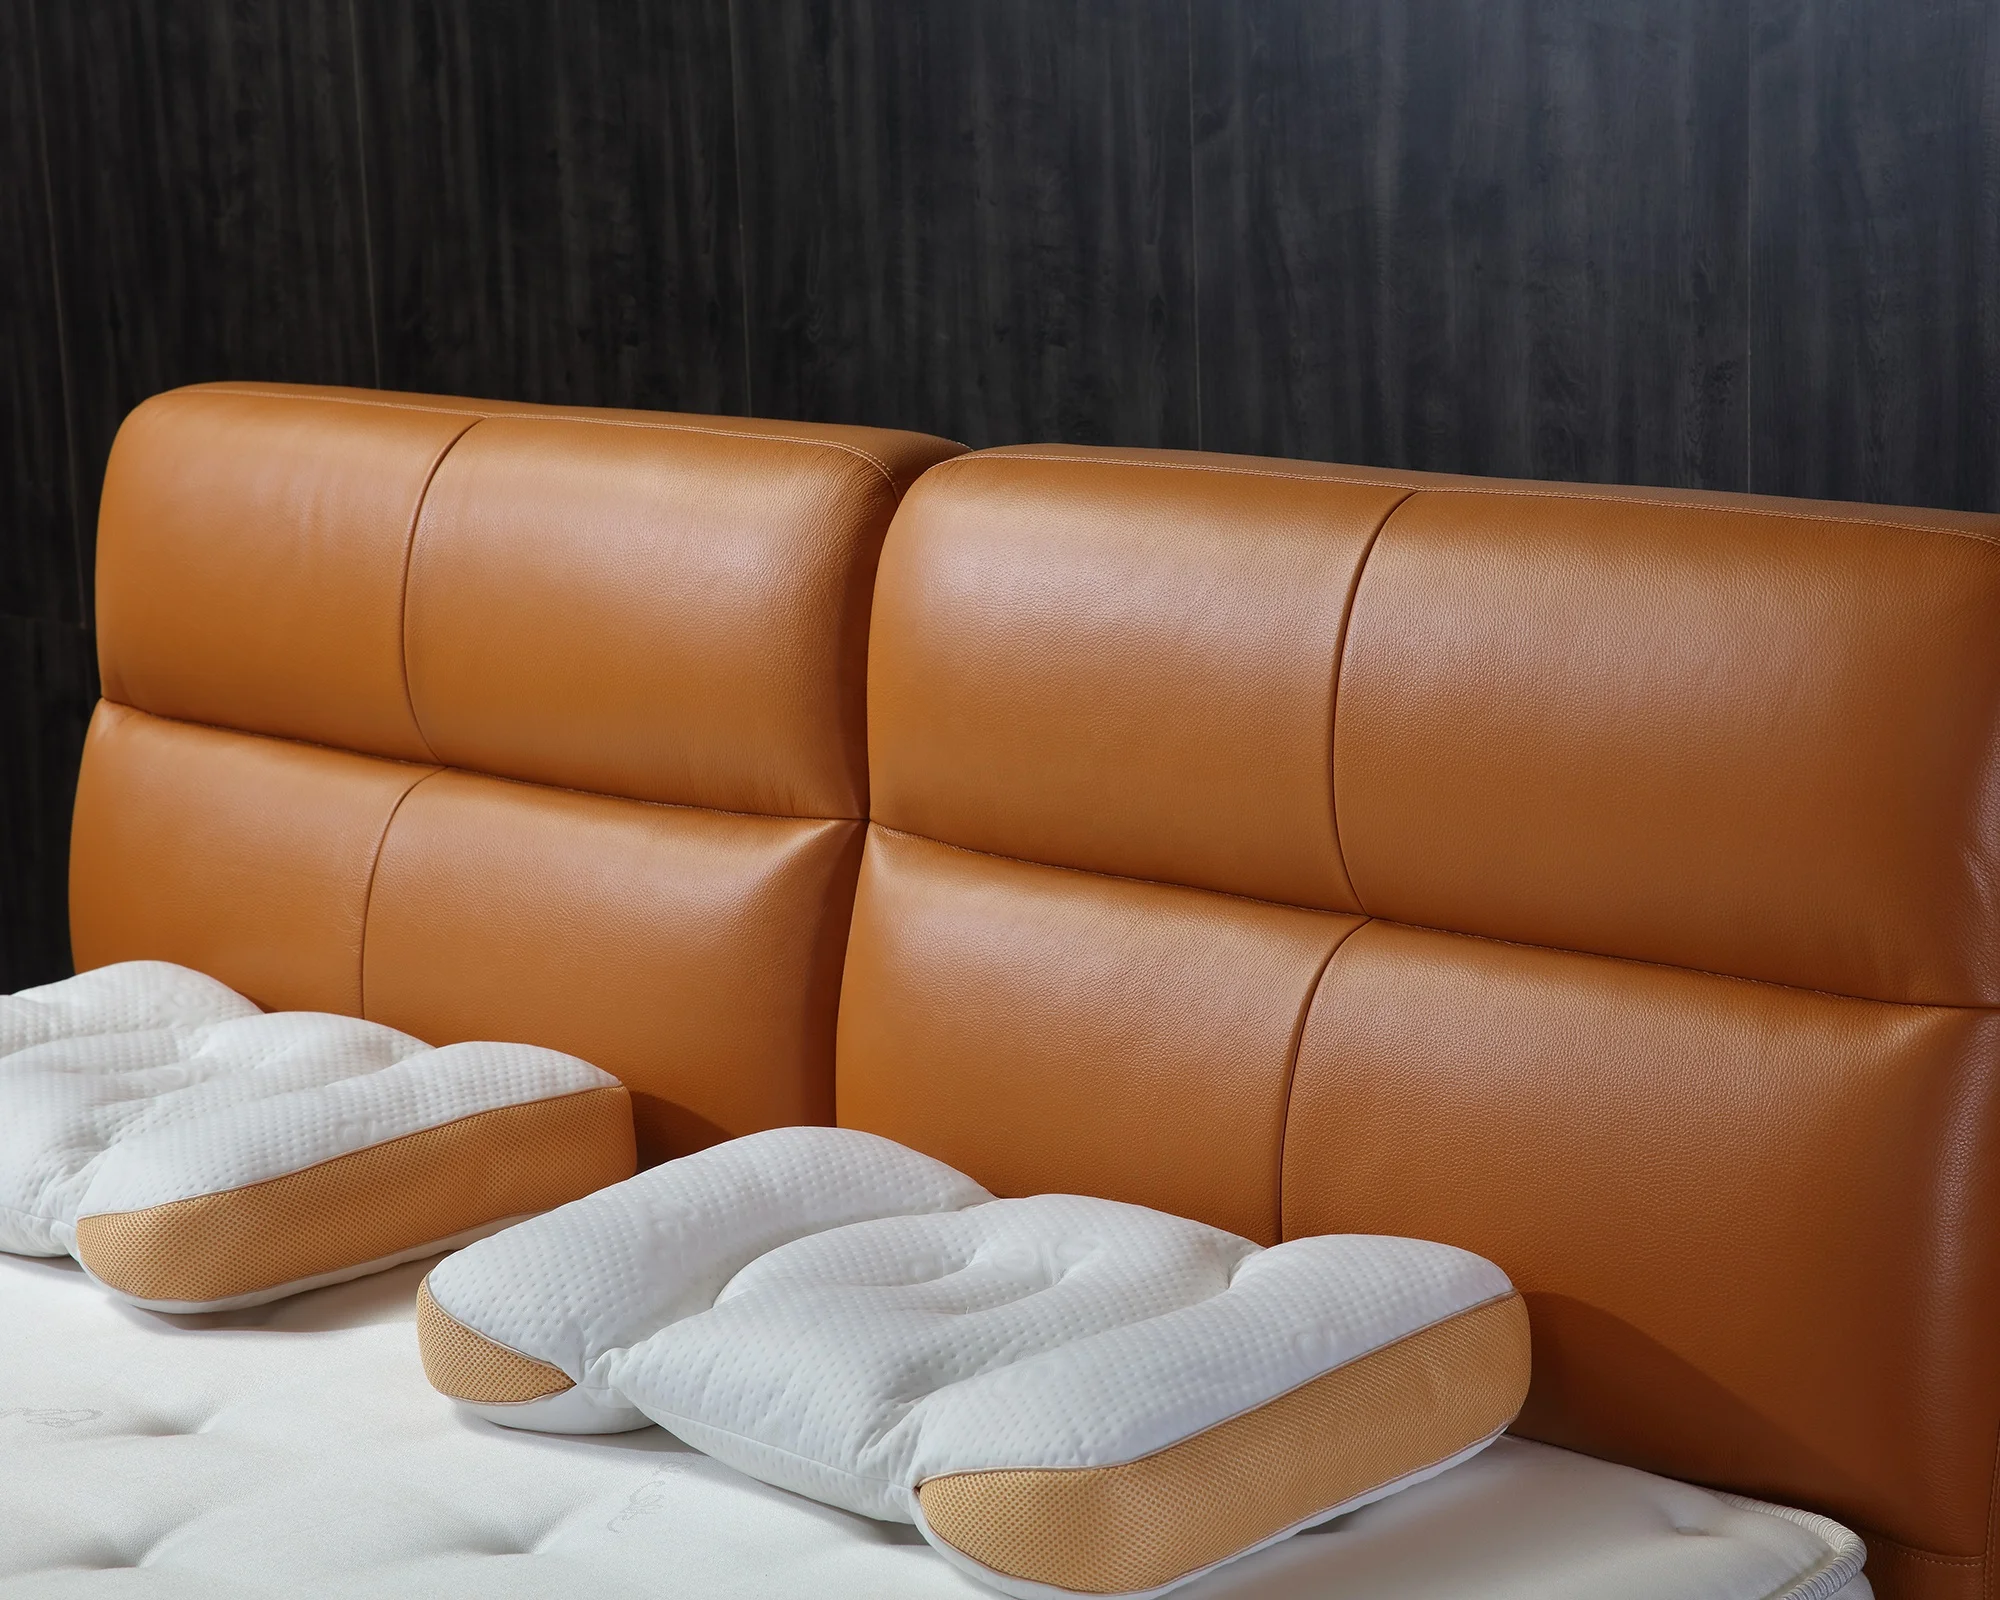 Modern Bed Designs Luxury Unique Bedroom Sets King Size Soft Bedroom Furniture